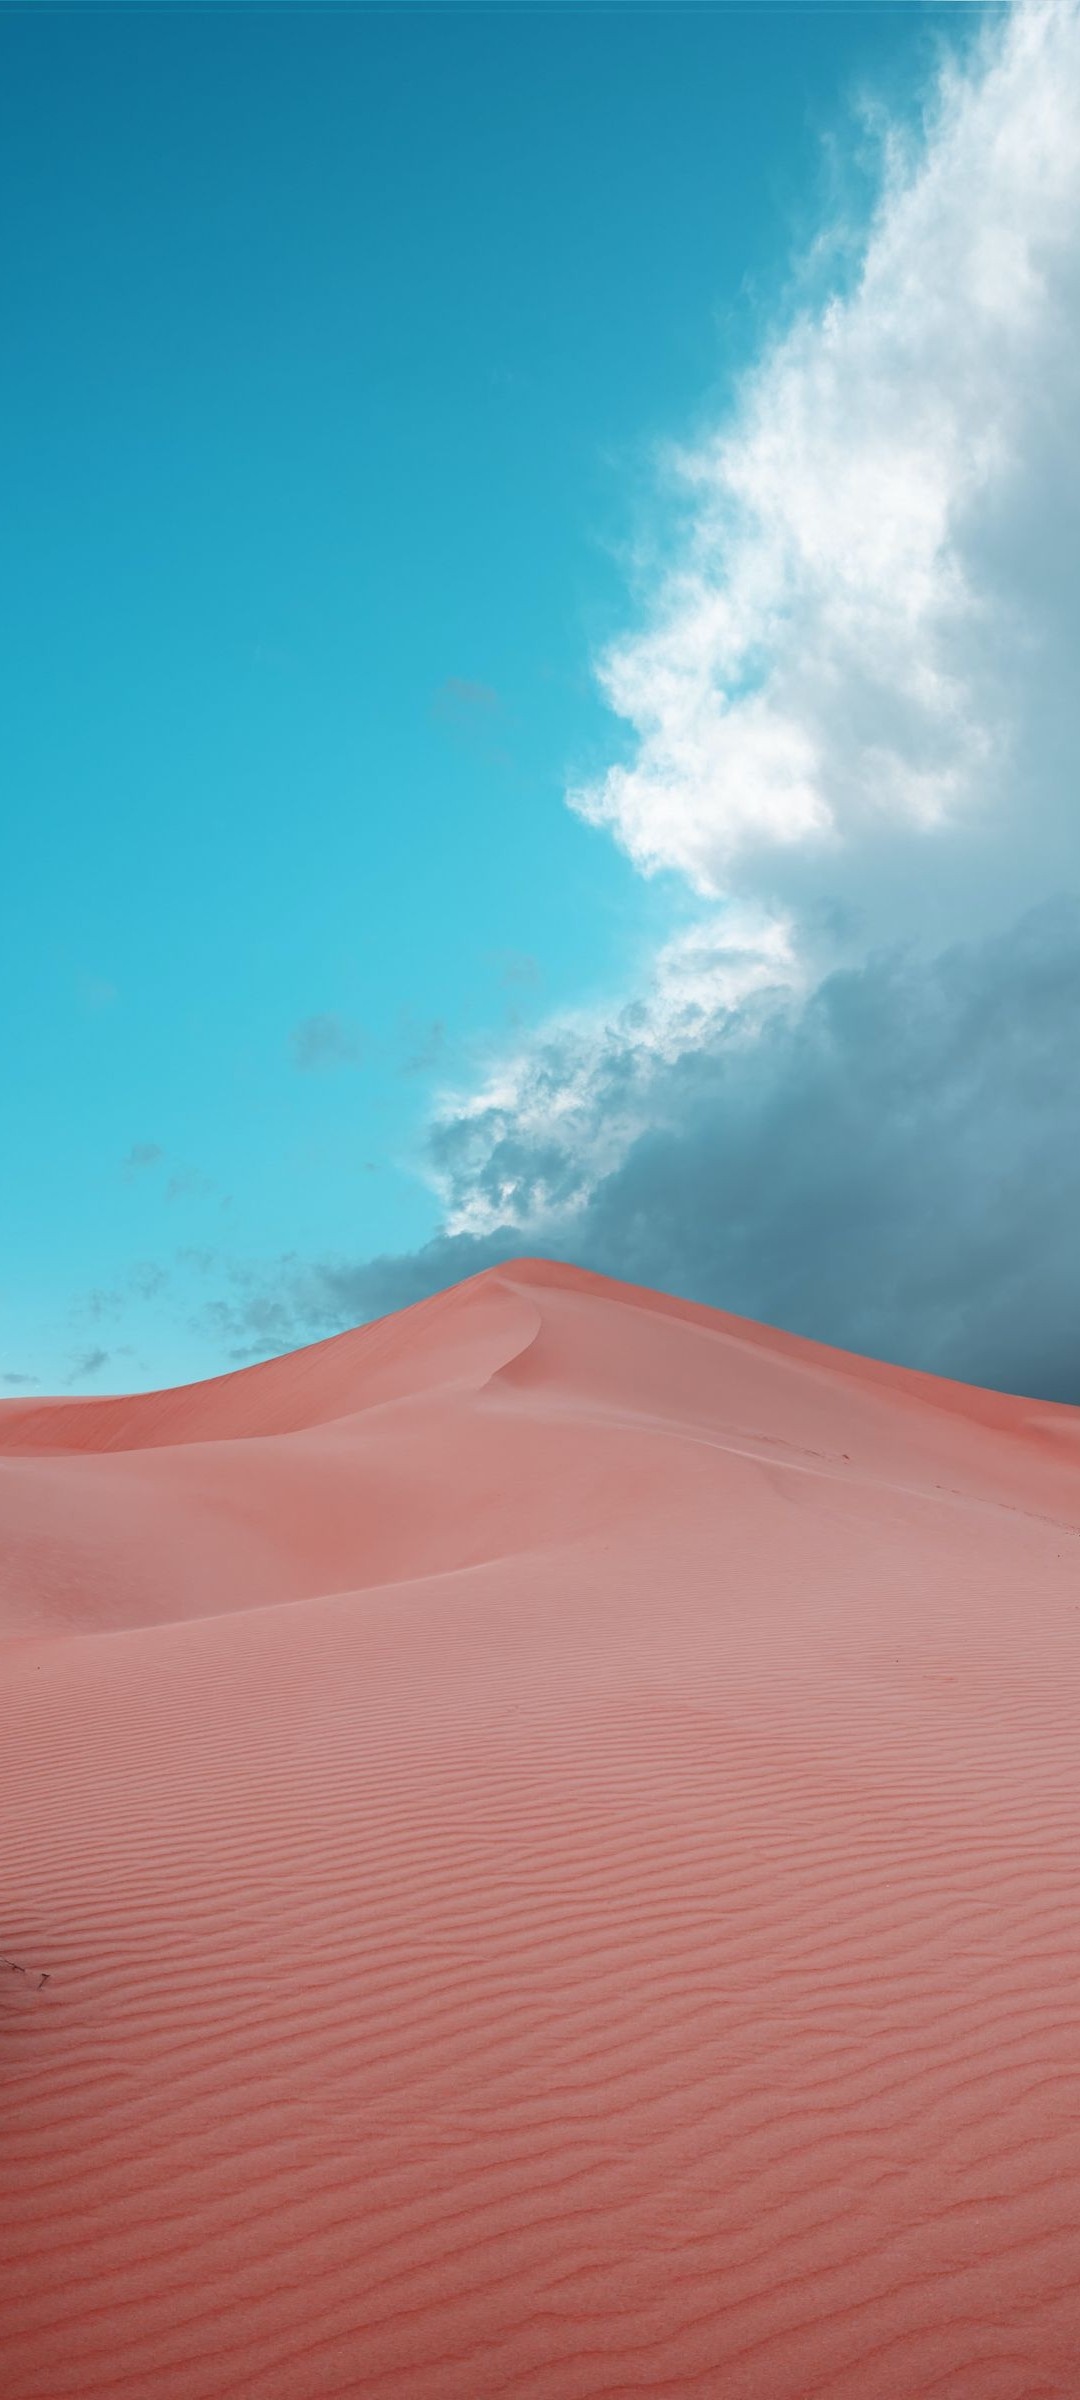 綺麗な青空と砂漠 Galaxy S21 5g Androidスマホ壁紙 待ち受け スマラン